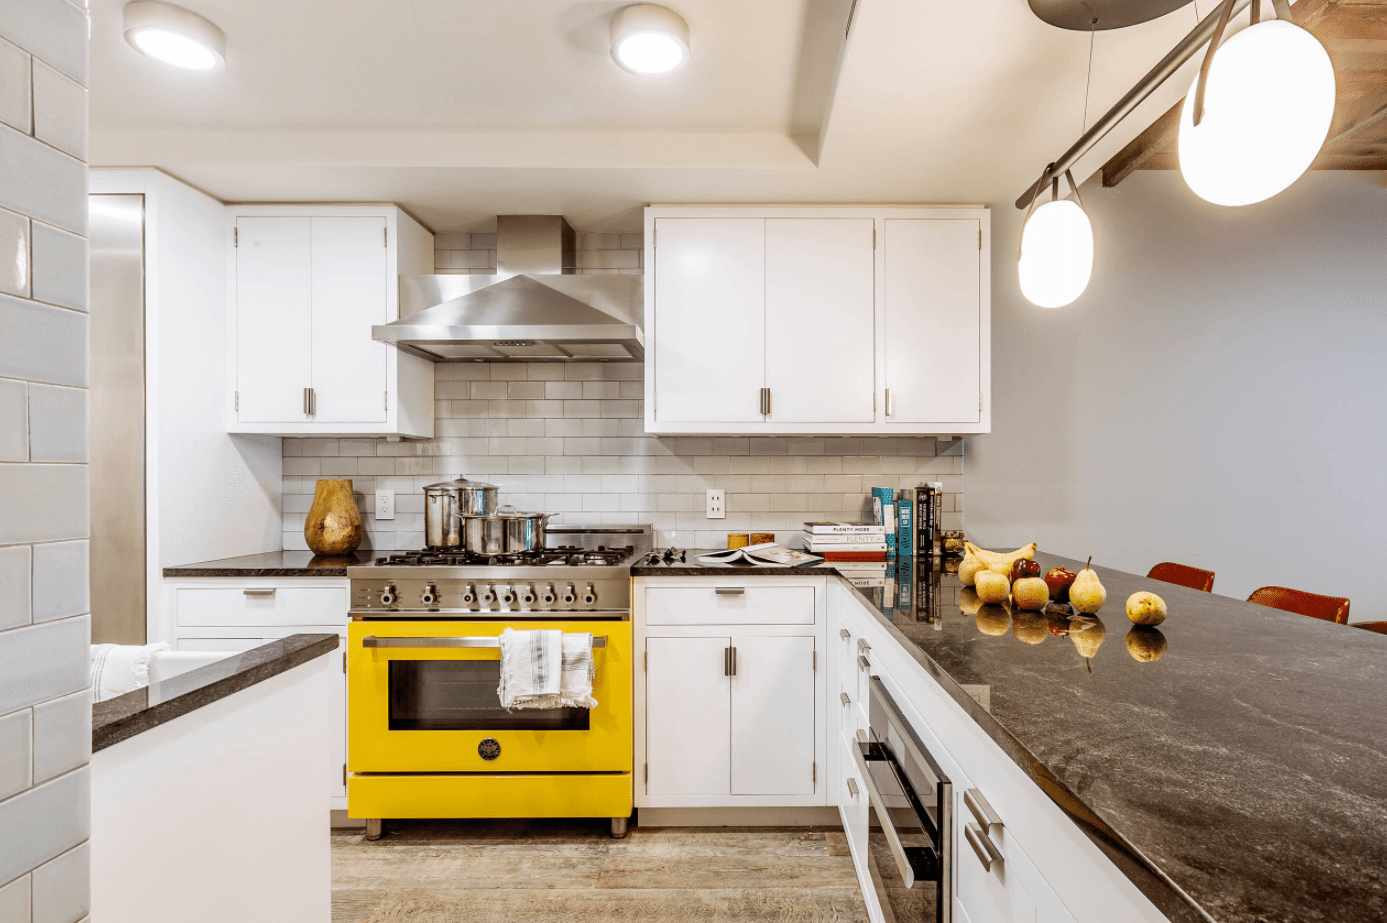 Phòng bếp này chỉ sử dụng màu vàng như một điểm nhấn nhá để căn phòng được chiếm lĩnh bởi sắc trắng không rơi vào cảm giác lạnh lẽo. Màu vàng được sơn cho lò nướng bên bố trí bên dưới bếp nấu khiến ai bước vào đều sẽ hướng sự chú ý về nó.